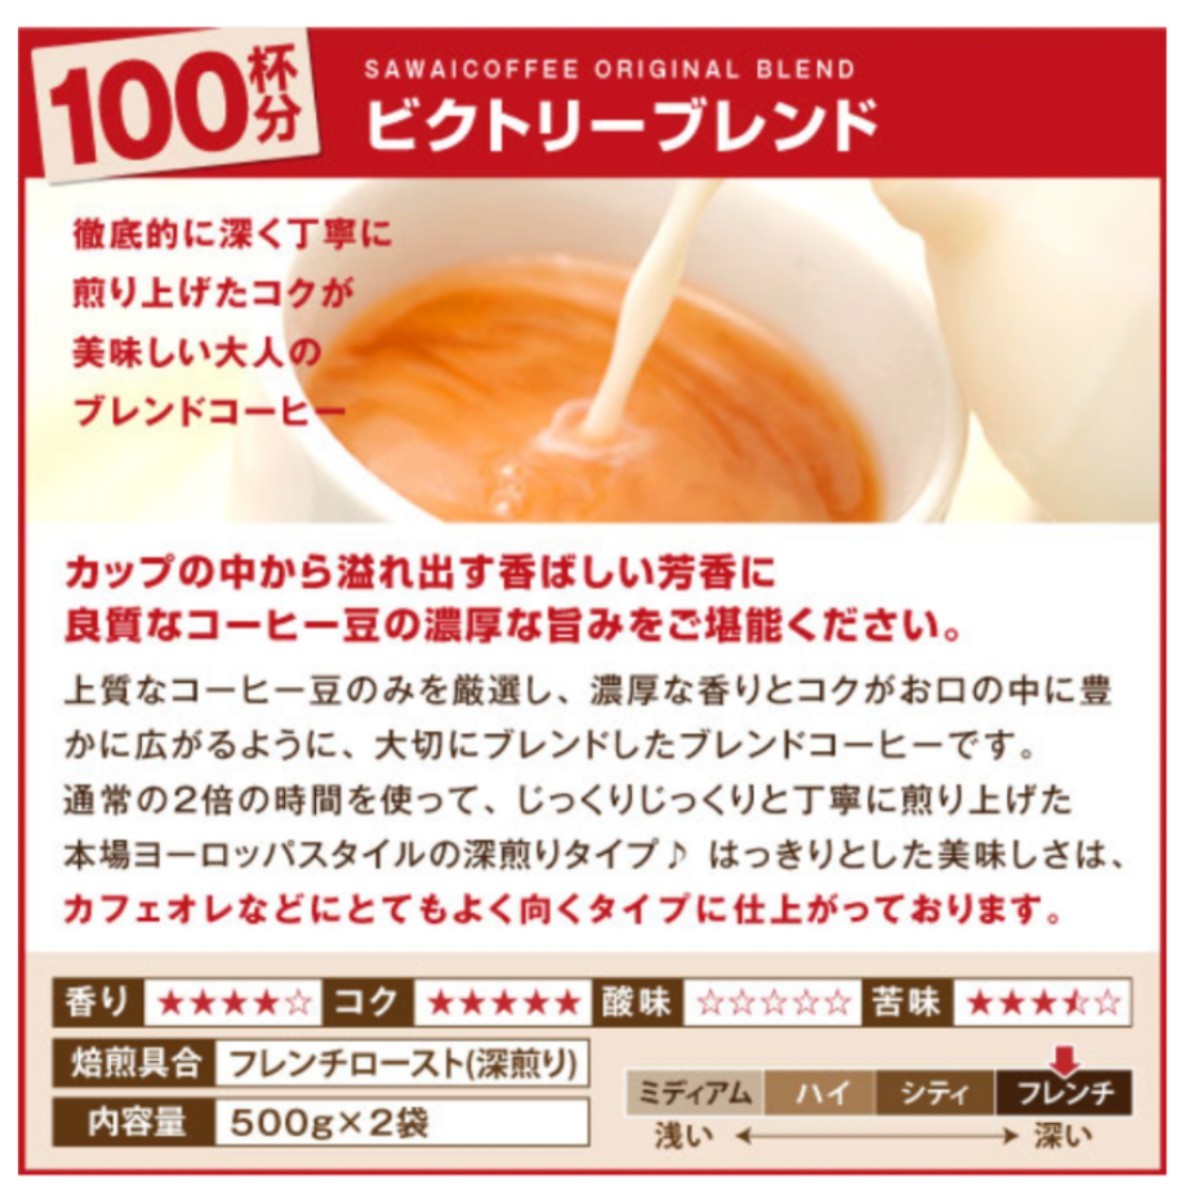 澤井コーヒー  コーヒー豆